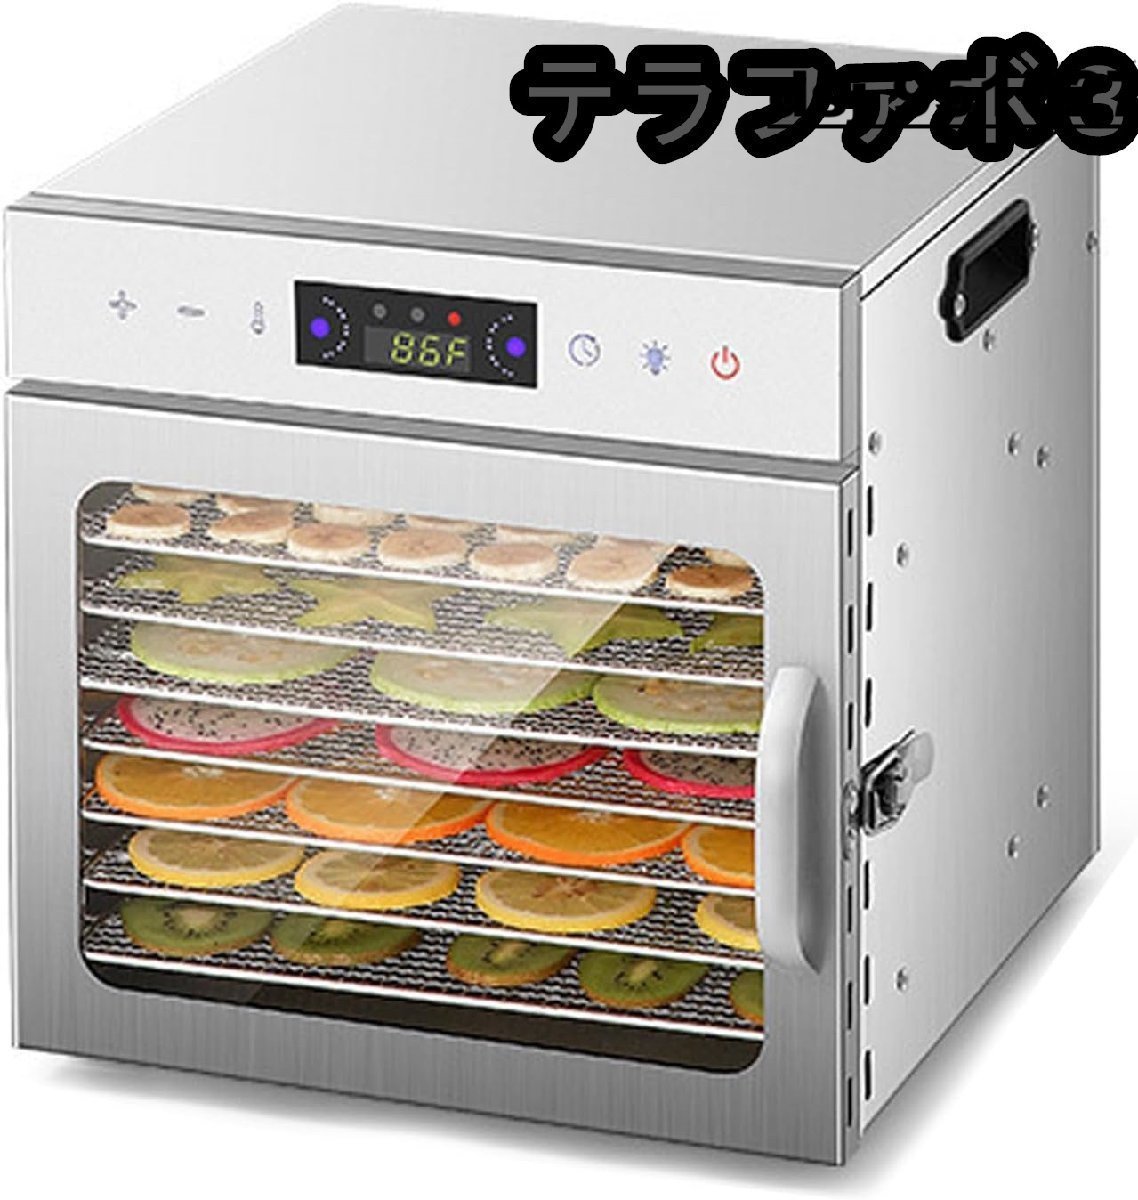 フードドライヤー 食品乾燥機 8層ステンレス製 大容量 使用簡単 野菜/果物/ジャーキー 家庭用 業務用